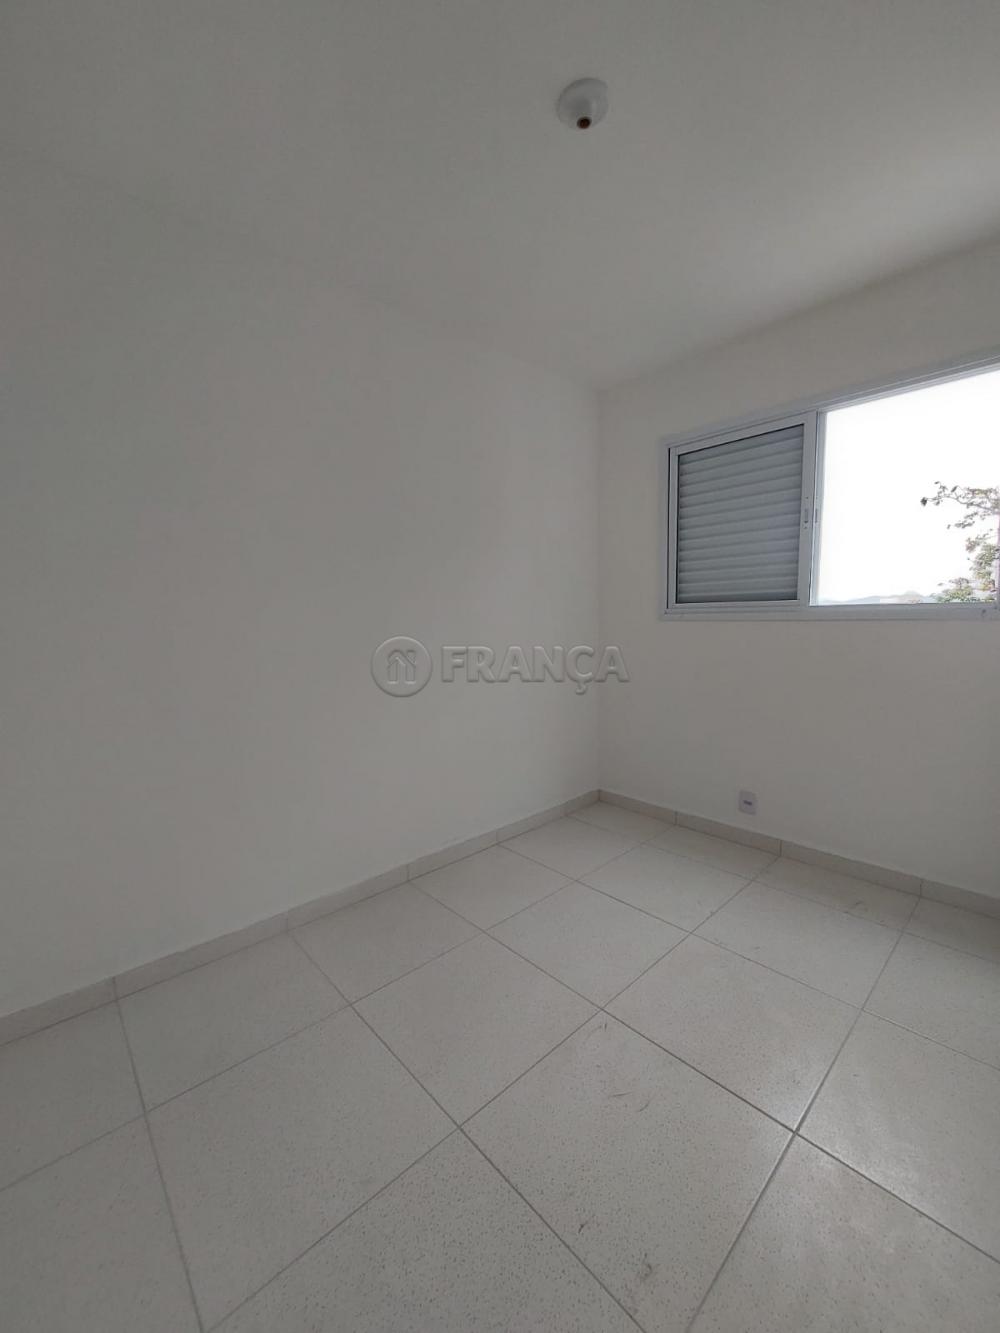 Alugar Apartamento / Padrão em Jacareí R$ 1.350,00 - Foto 6